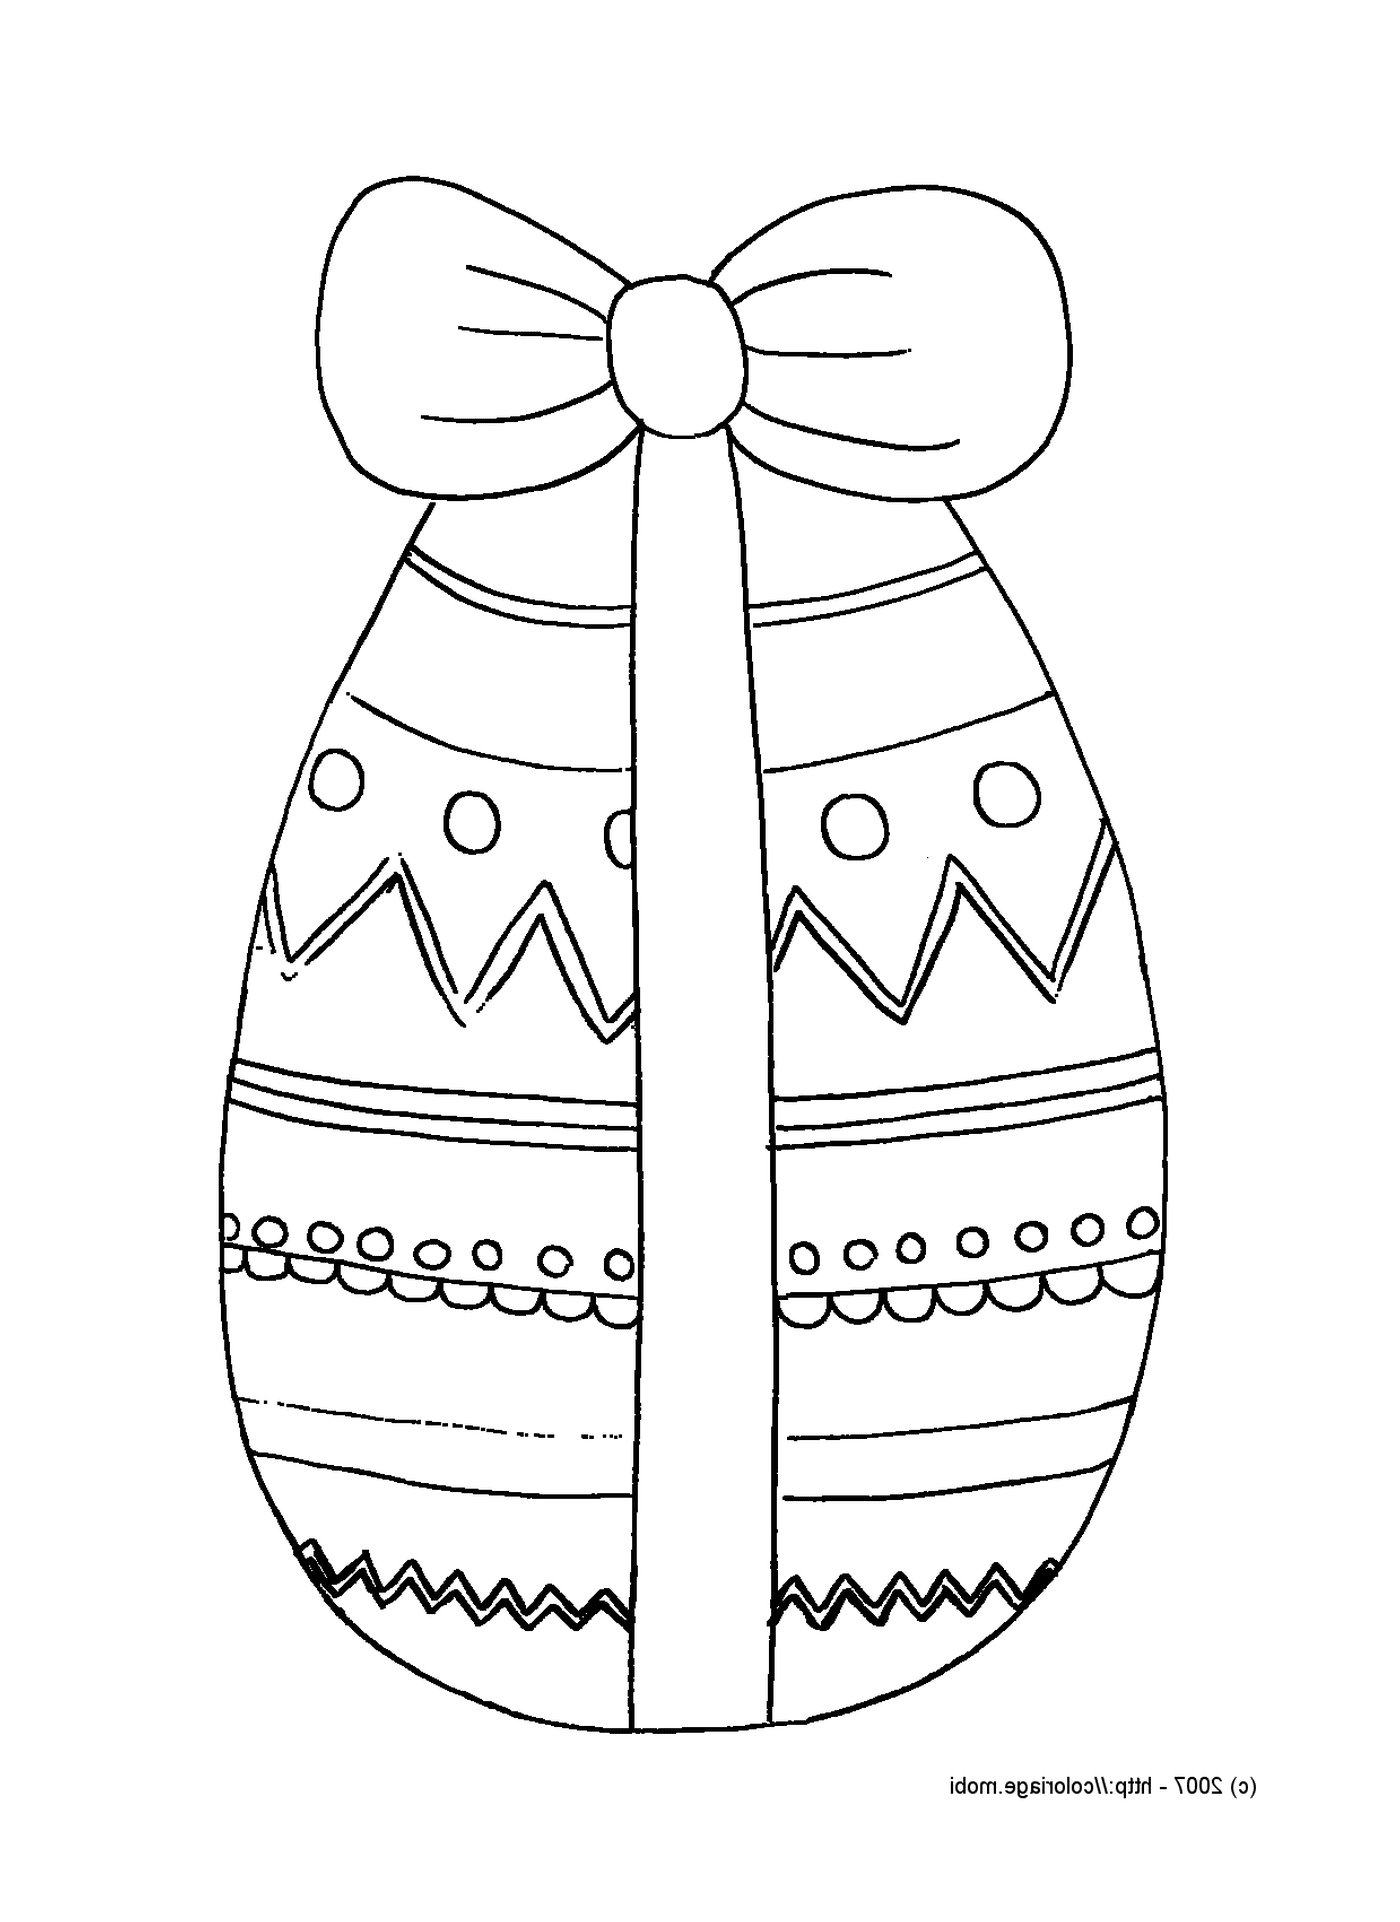   Un œuf de Pâques emballé 